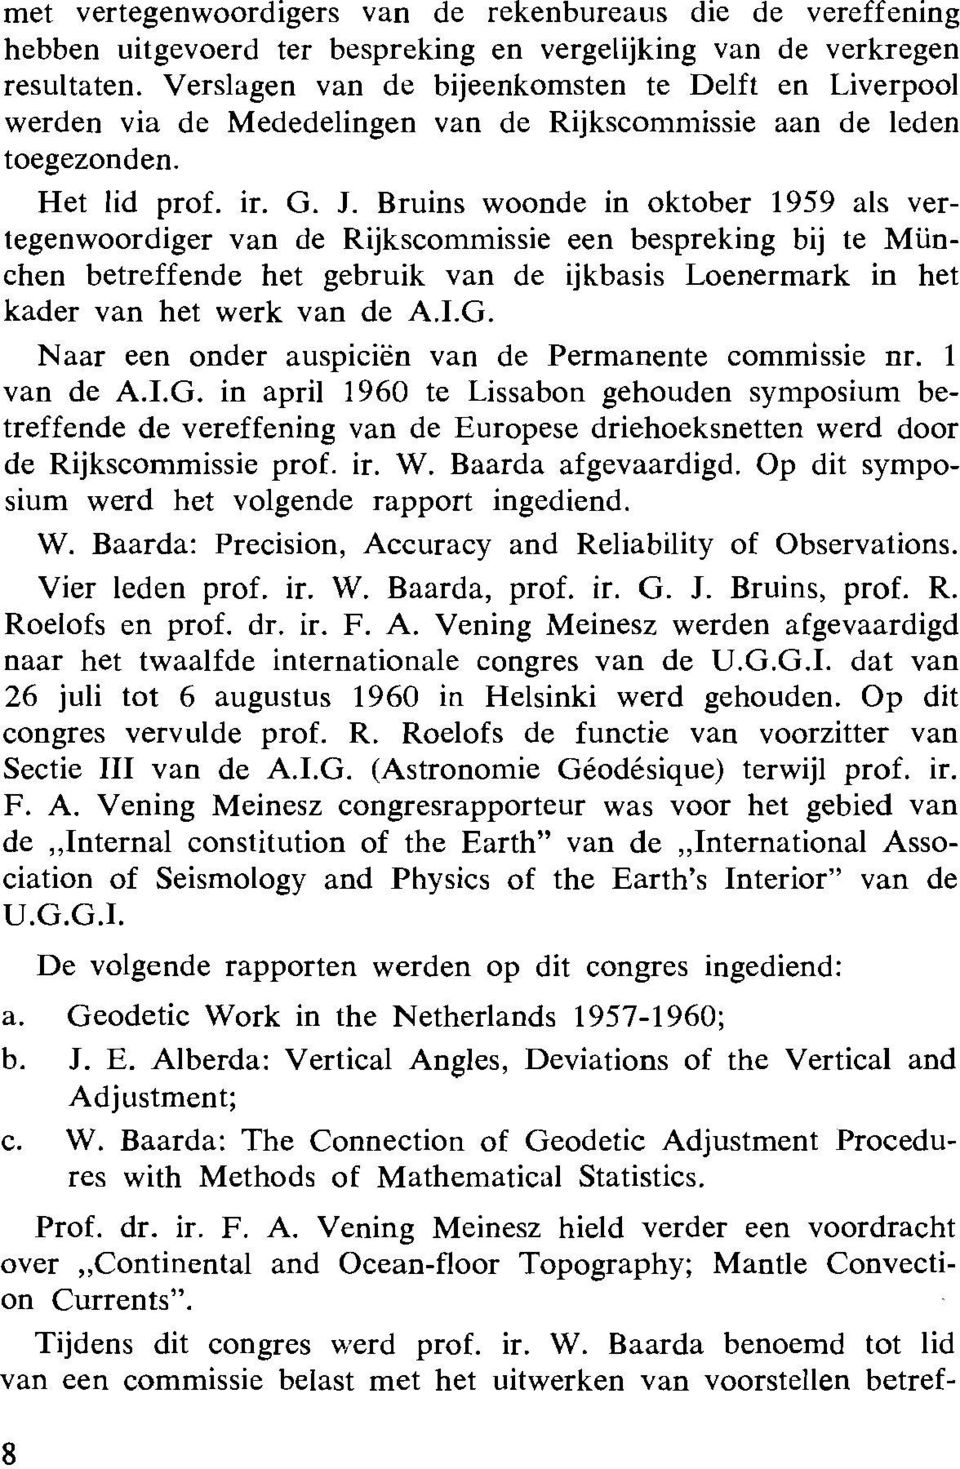 Bruins woonde in oktober 1959 als vertegenwoordiger van de Rijkscommissie een bespreking bij te Munchen betreffende het gebruik van de ijkbasis Loenermark in het kader van het werk van de A.I.G.